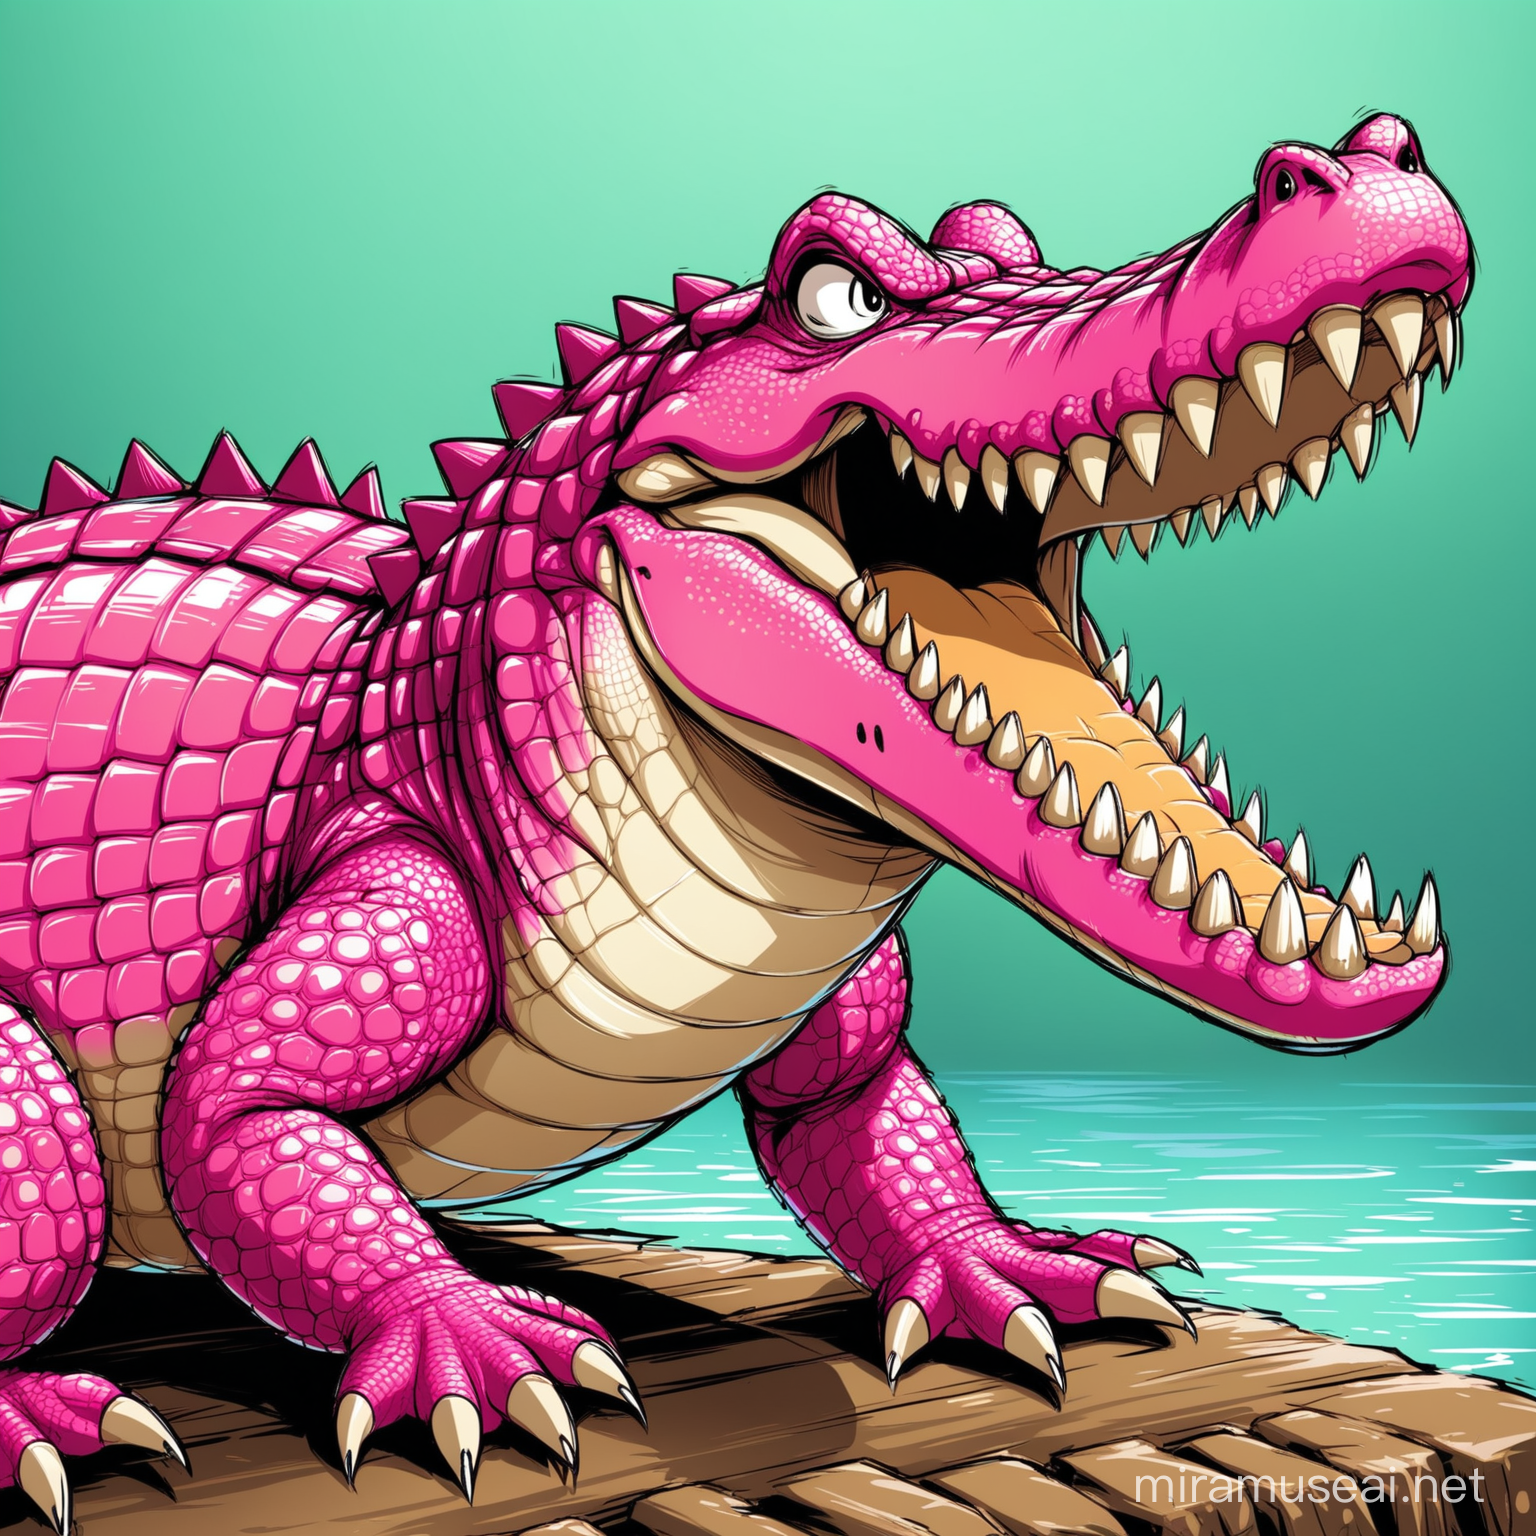 Fierce Pink Crocodile Roaring in Anger